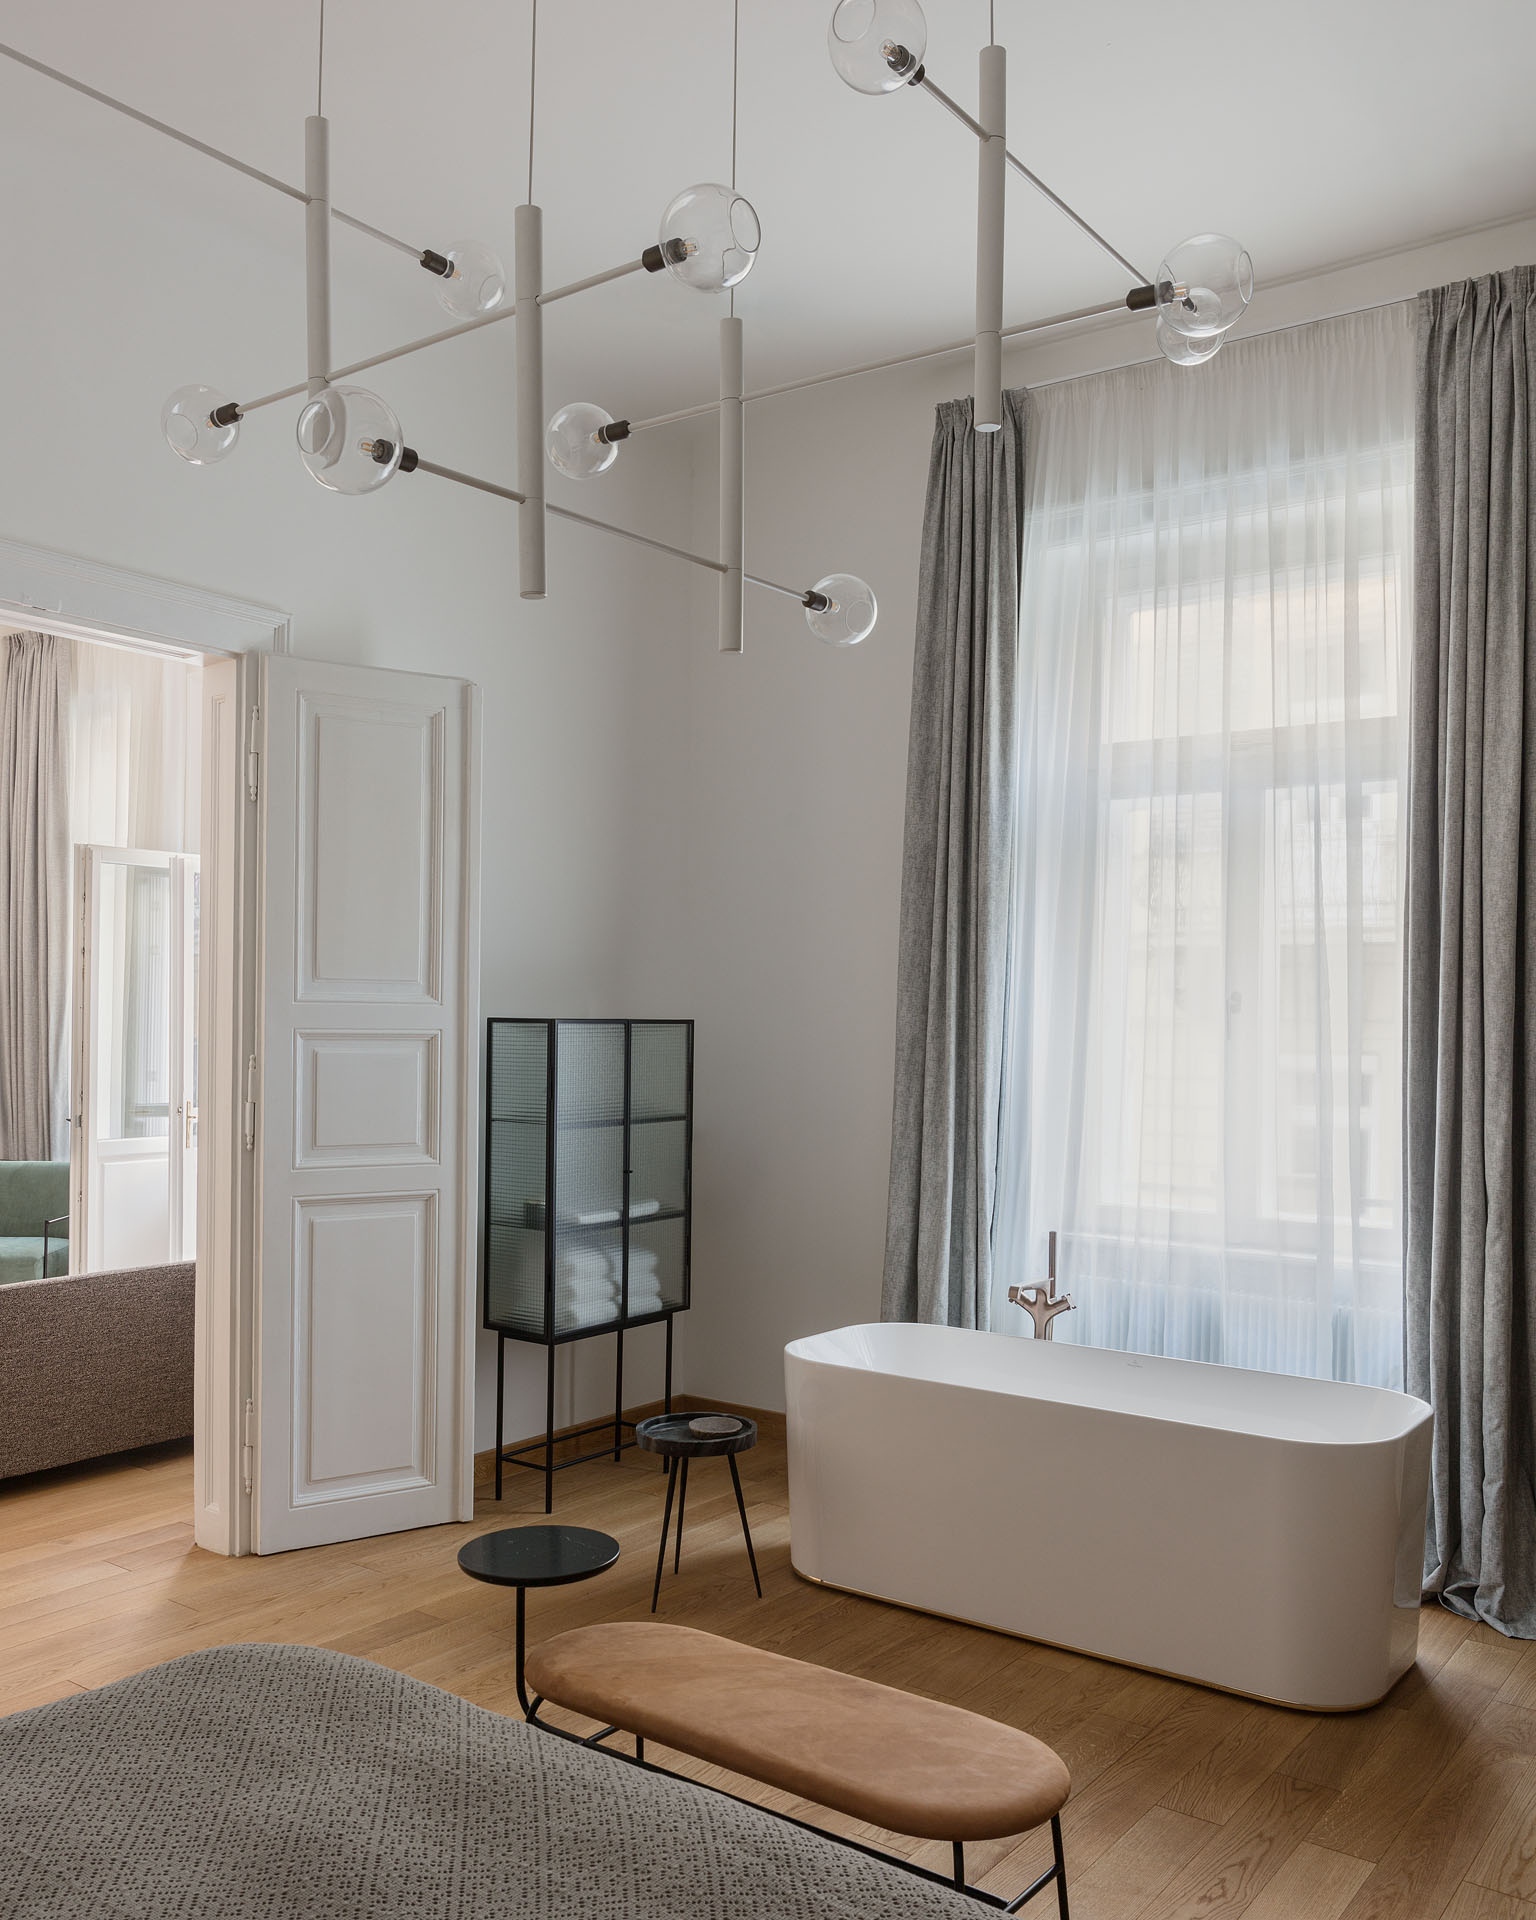 A nagyobbik háló attrakciója a térben álló fürdőkád, amelynek lekerekített formája az ágy végében álló filigrán ülőbútorral harmonizál. A felújított klasszikus ajtók hangsúlyos szerepet kapnak a modern, geometrikus bútorok között.